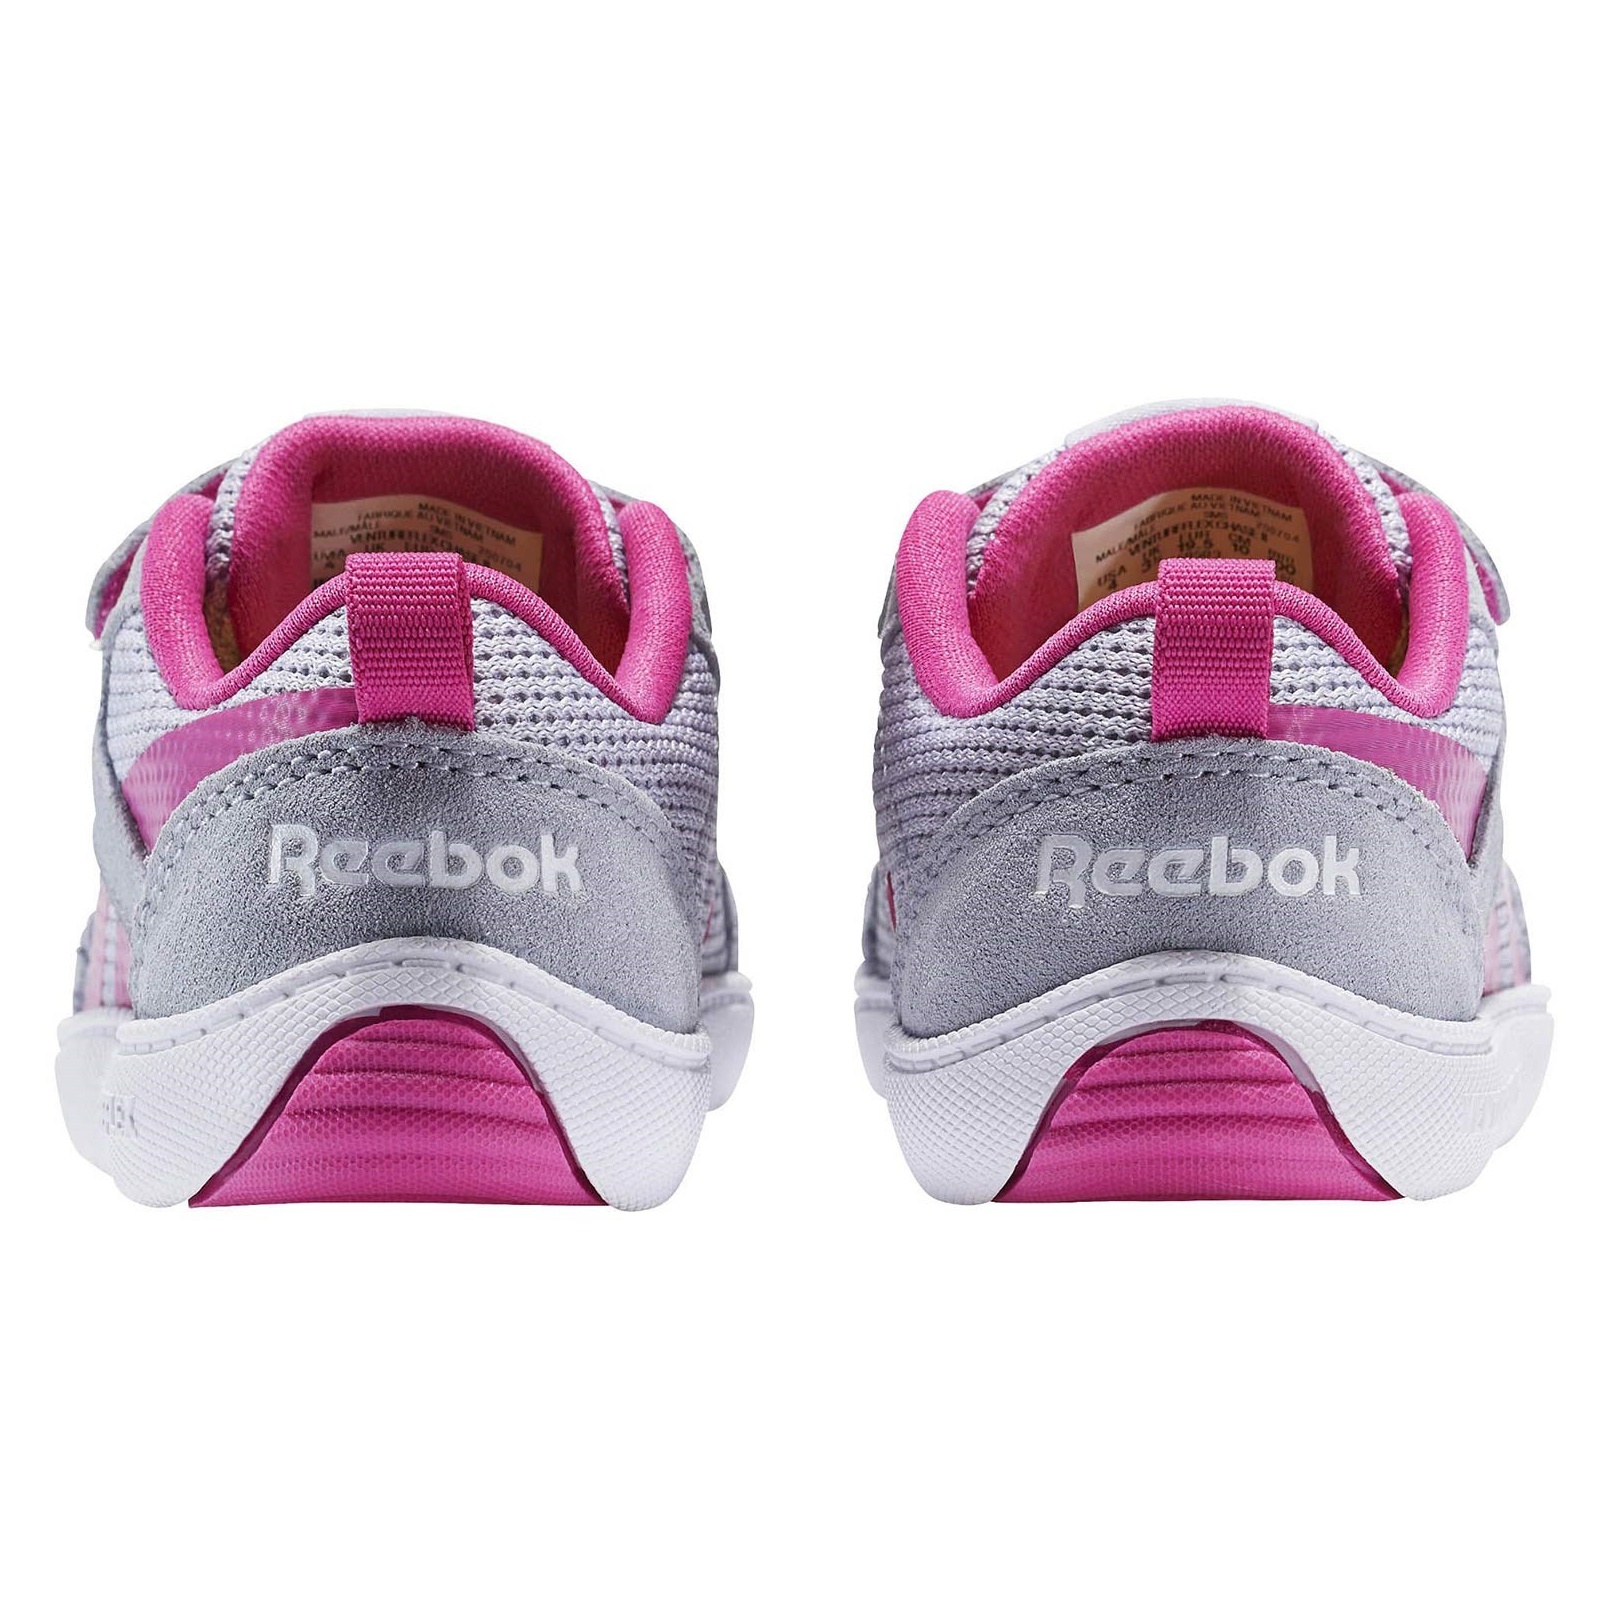 کفش پیاده روی چسبی نوزادی دخترانه Ventureflex Chase - ریباک